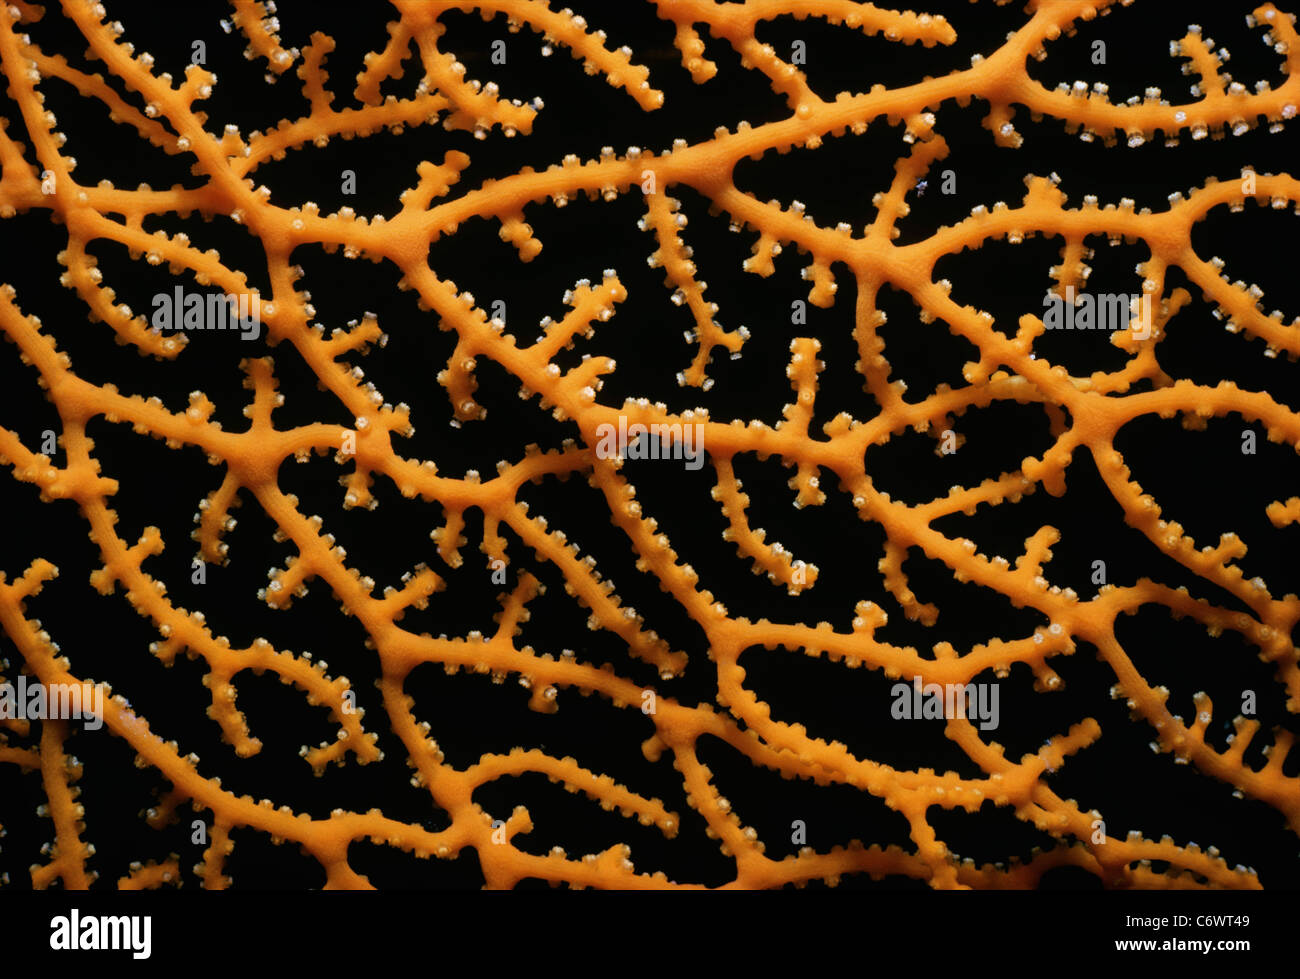 Gorgonian Coral (Gorgonacea) polyps closed. Egypt, Red Sea Stock Photo